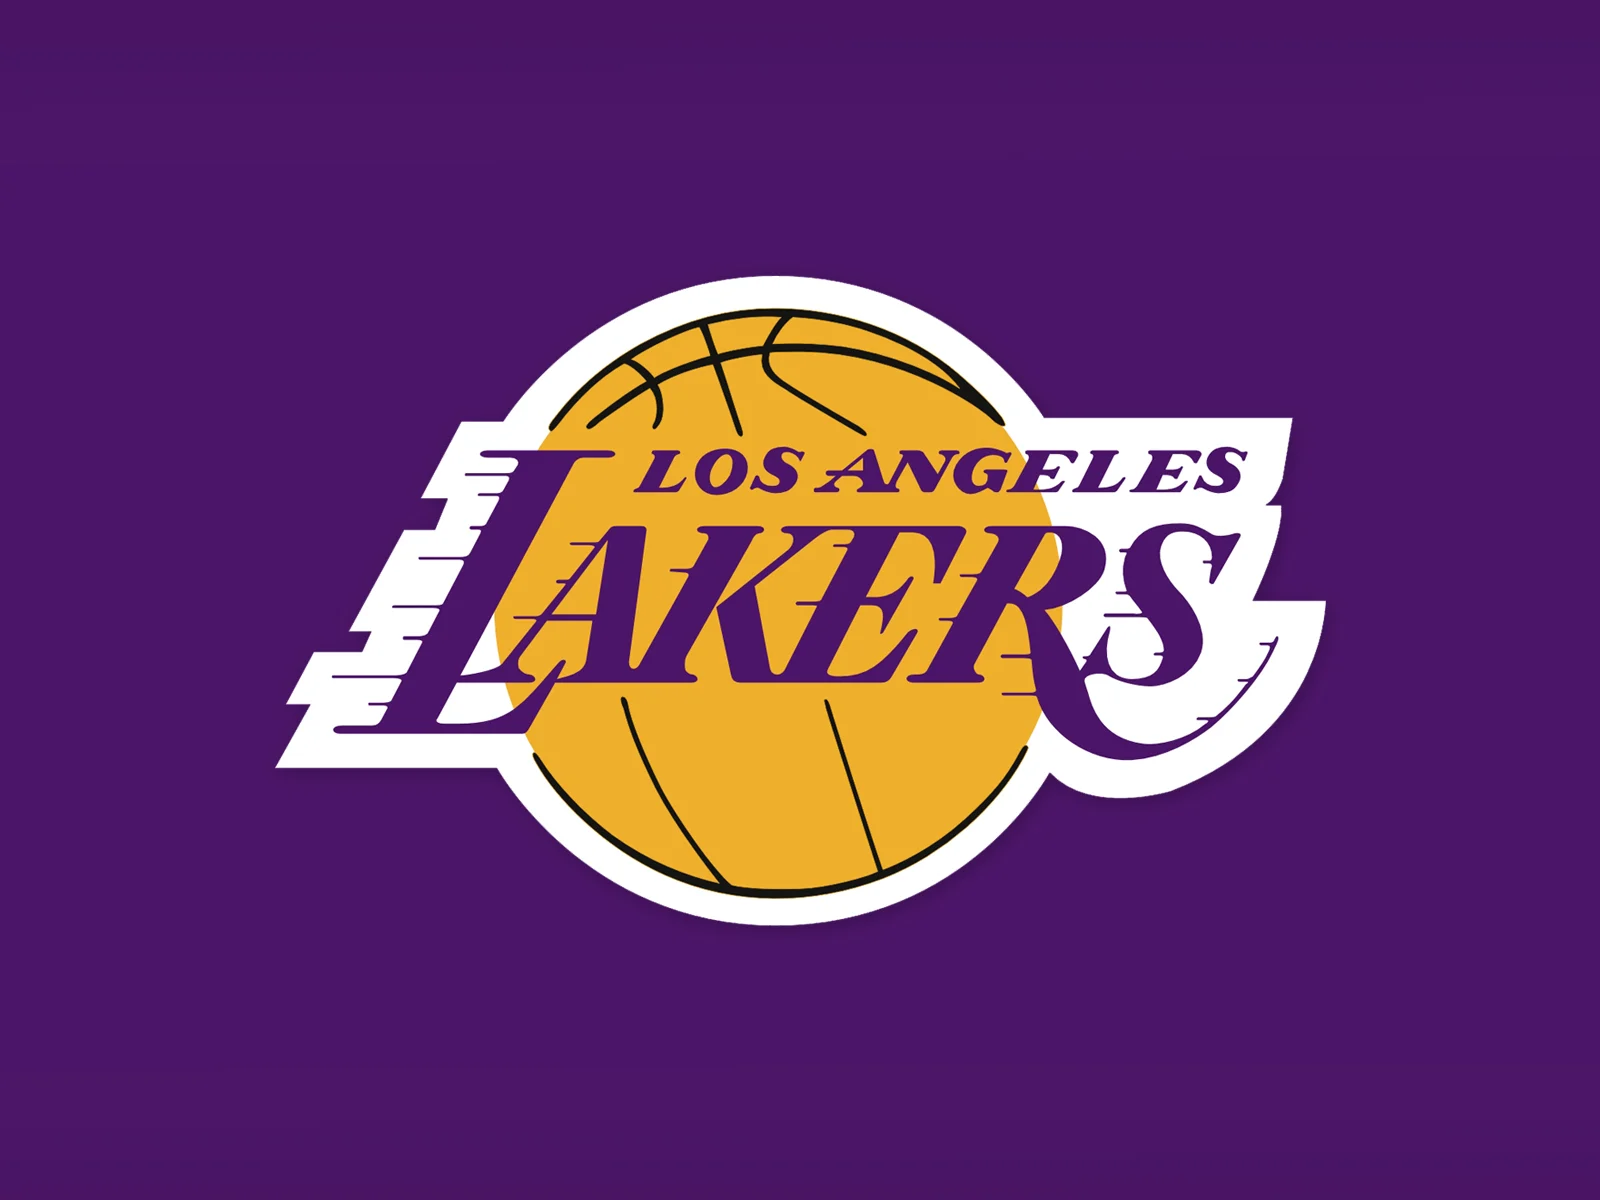 Lakers bleiben ohne Verstärkung, nachdem Optimismus hinsichtlich einer Rückkehr nach Spiel 3 herrscht